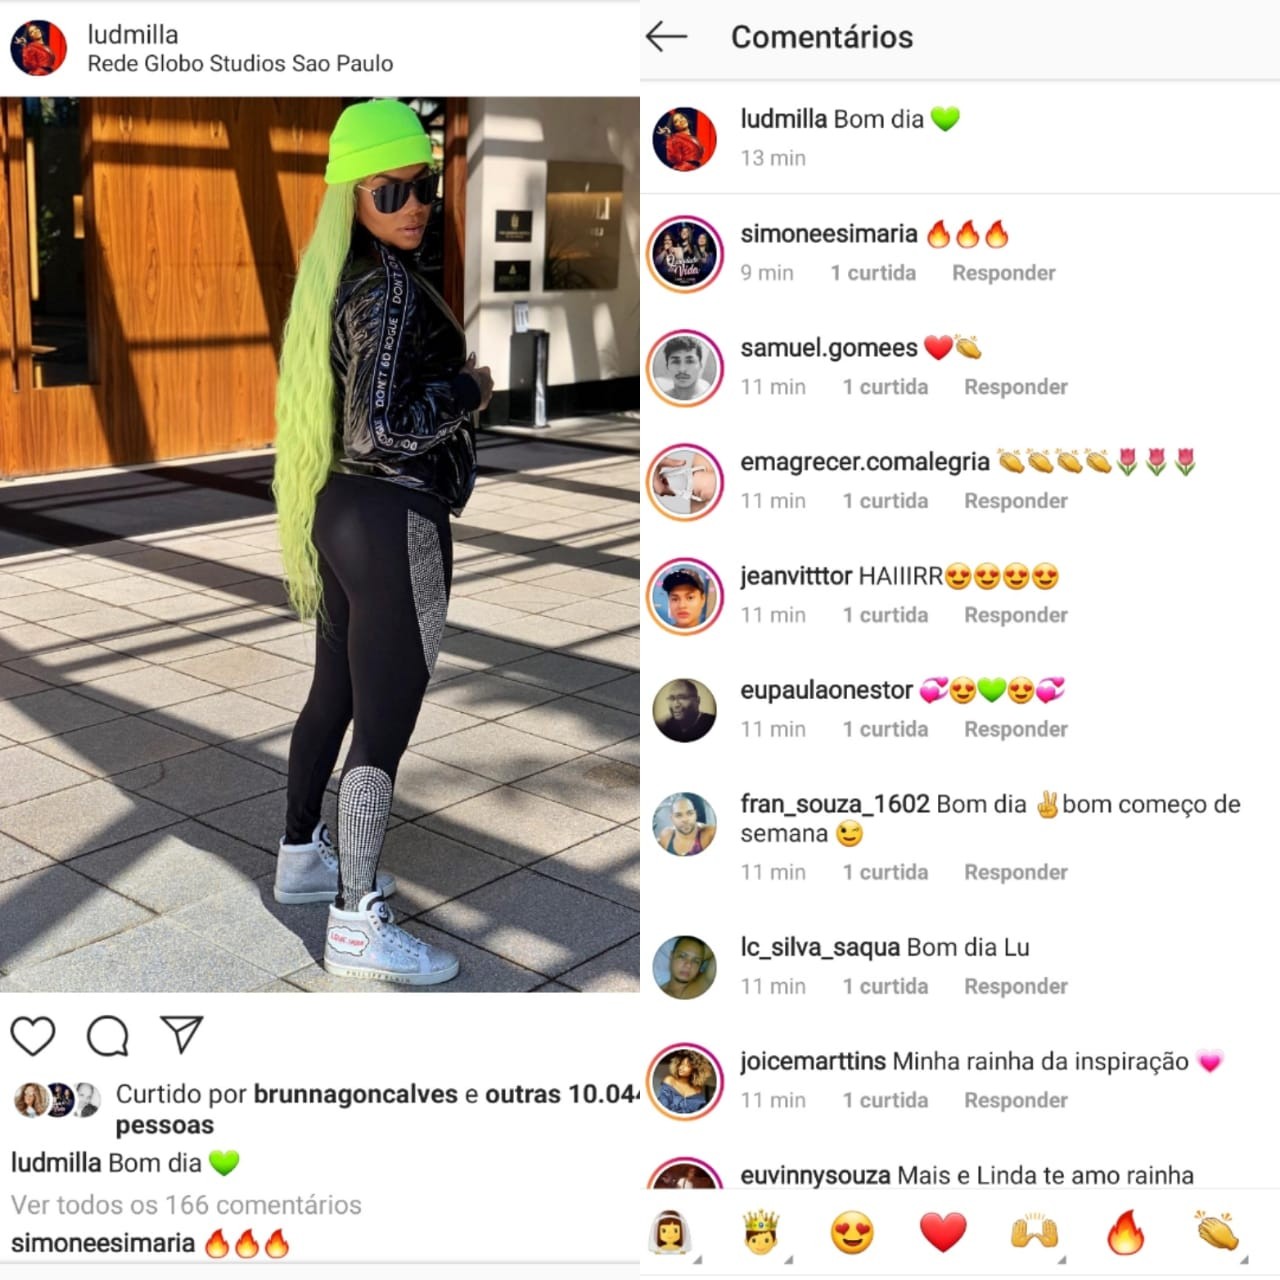 Comentários na publicação de Ludmilla (Foto: Reprodução/Instagram)